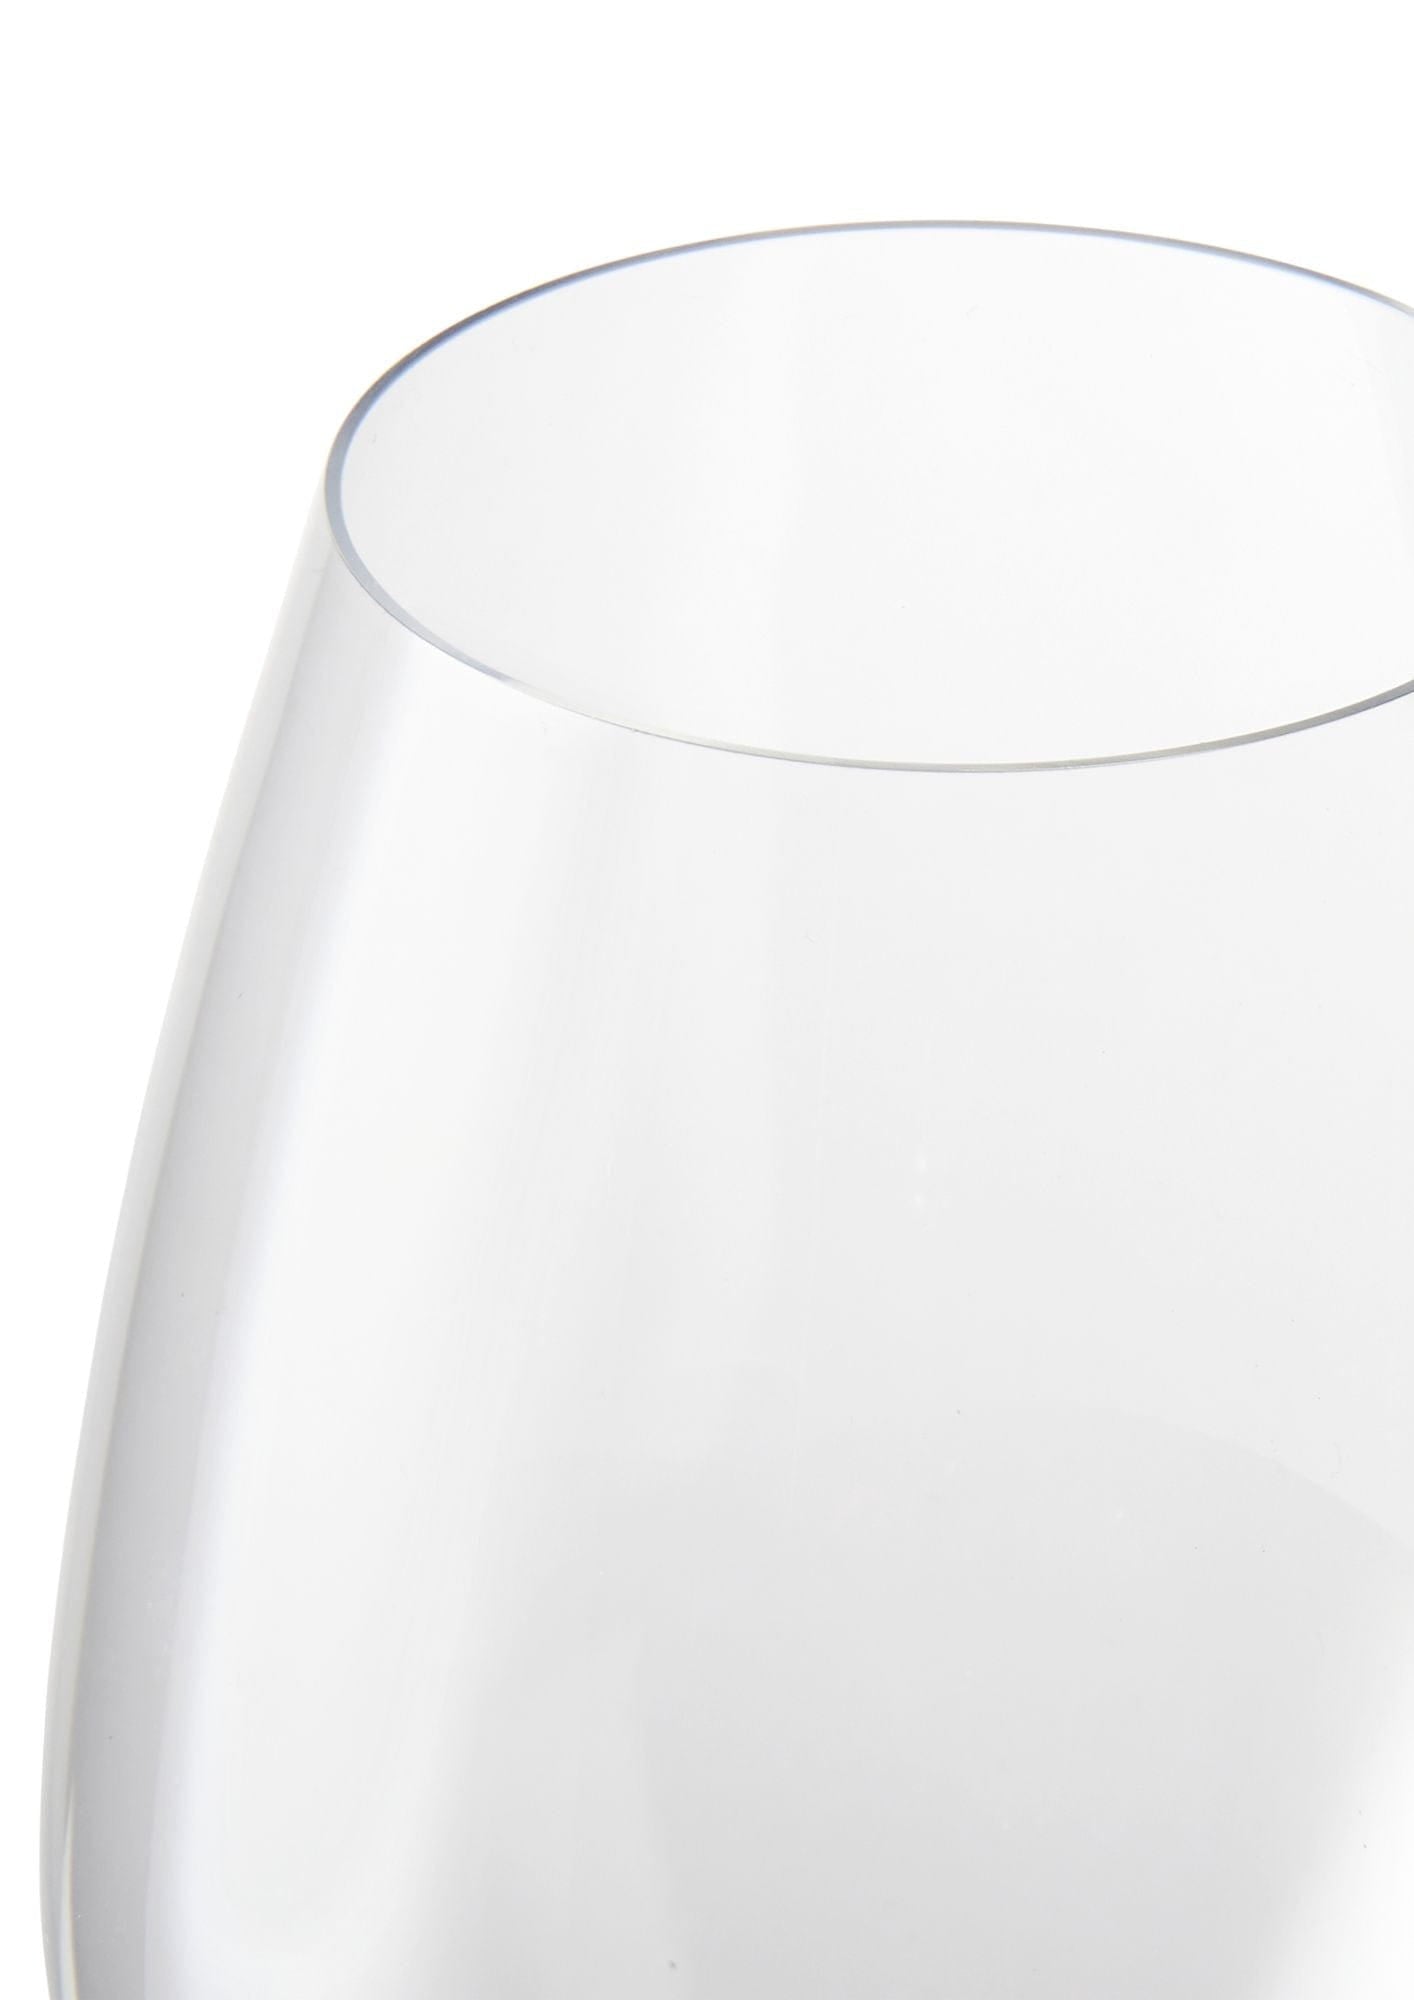 Rosendahl Premium champagneglasuppsättning av 2 370 ml, tydligt